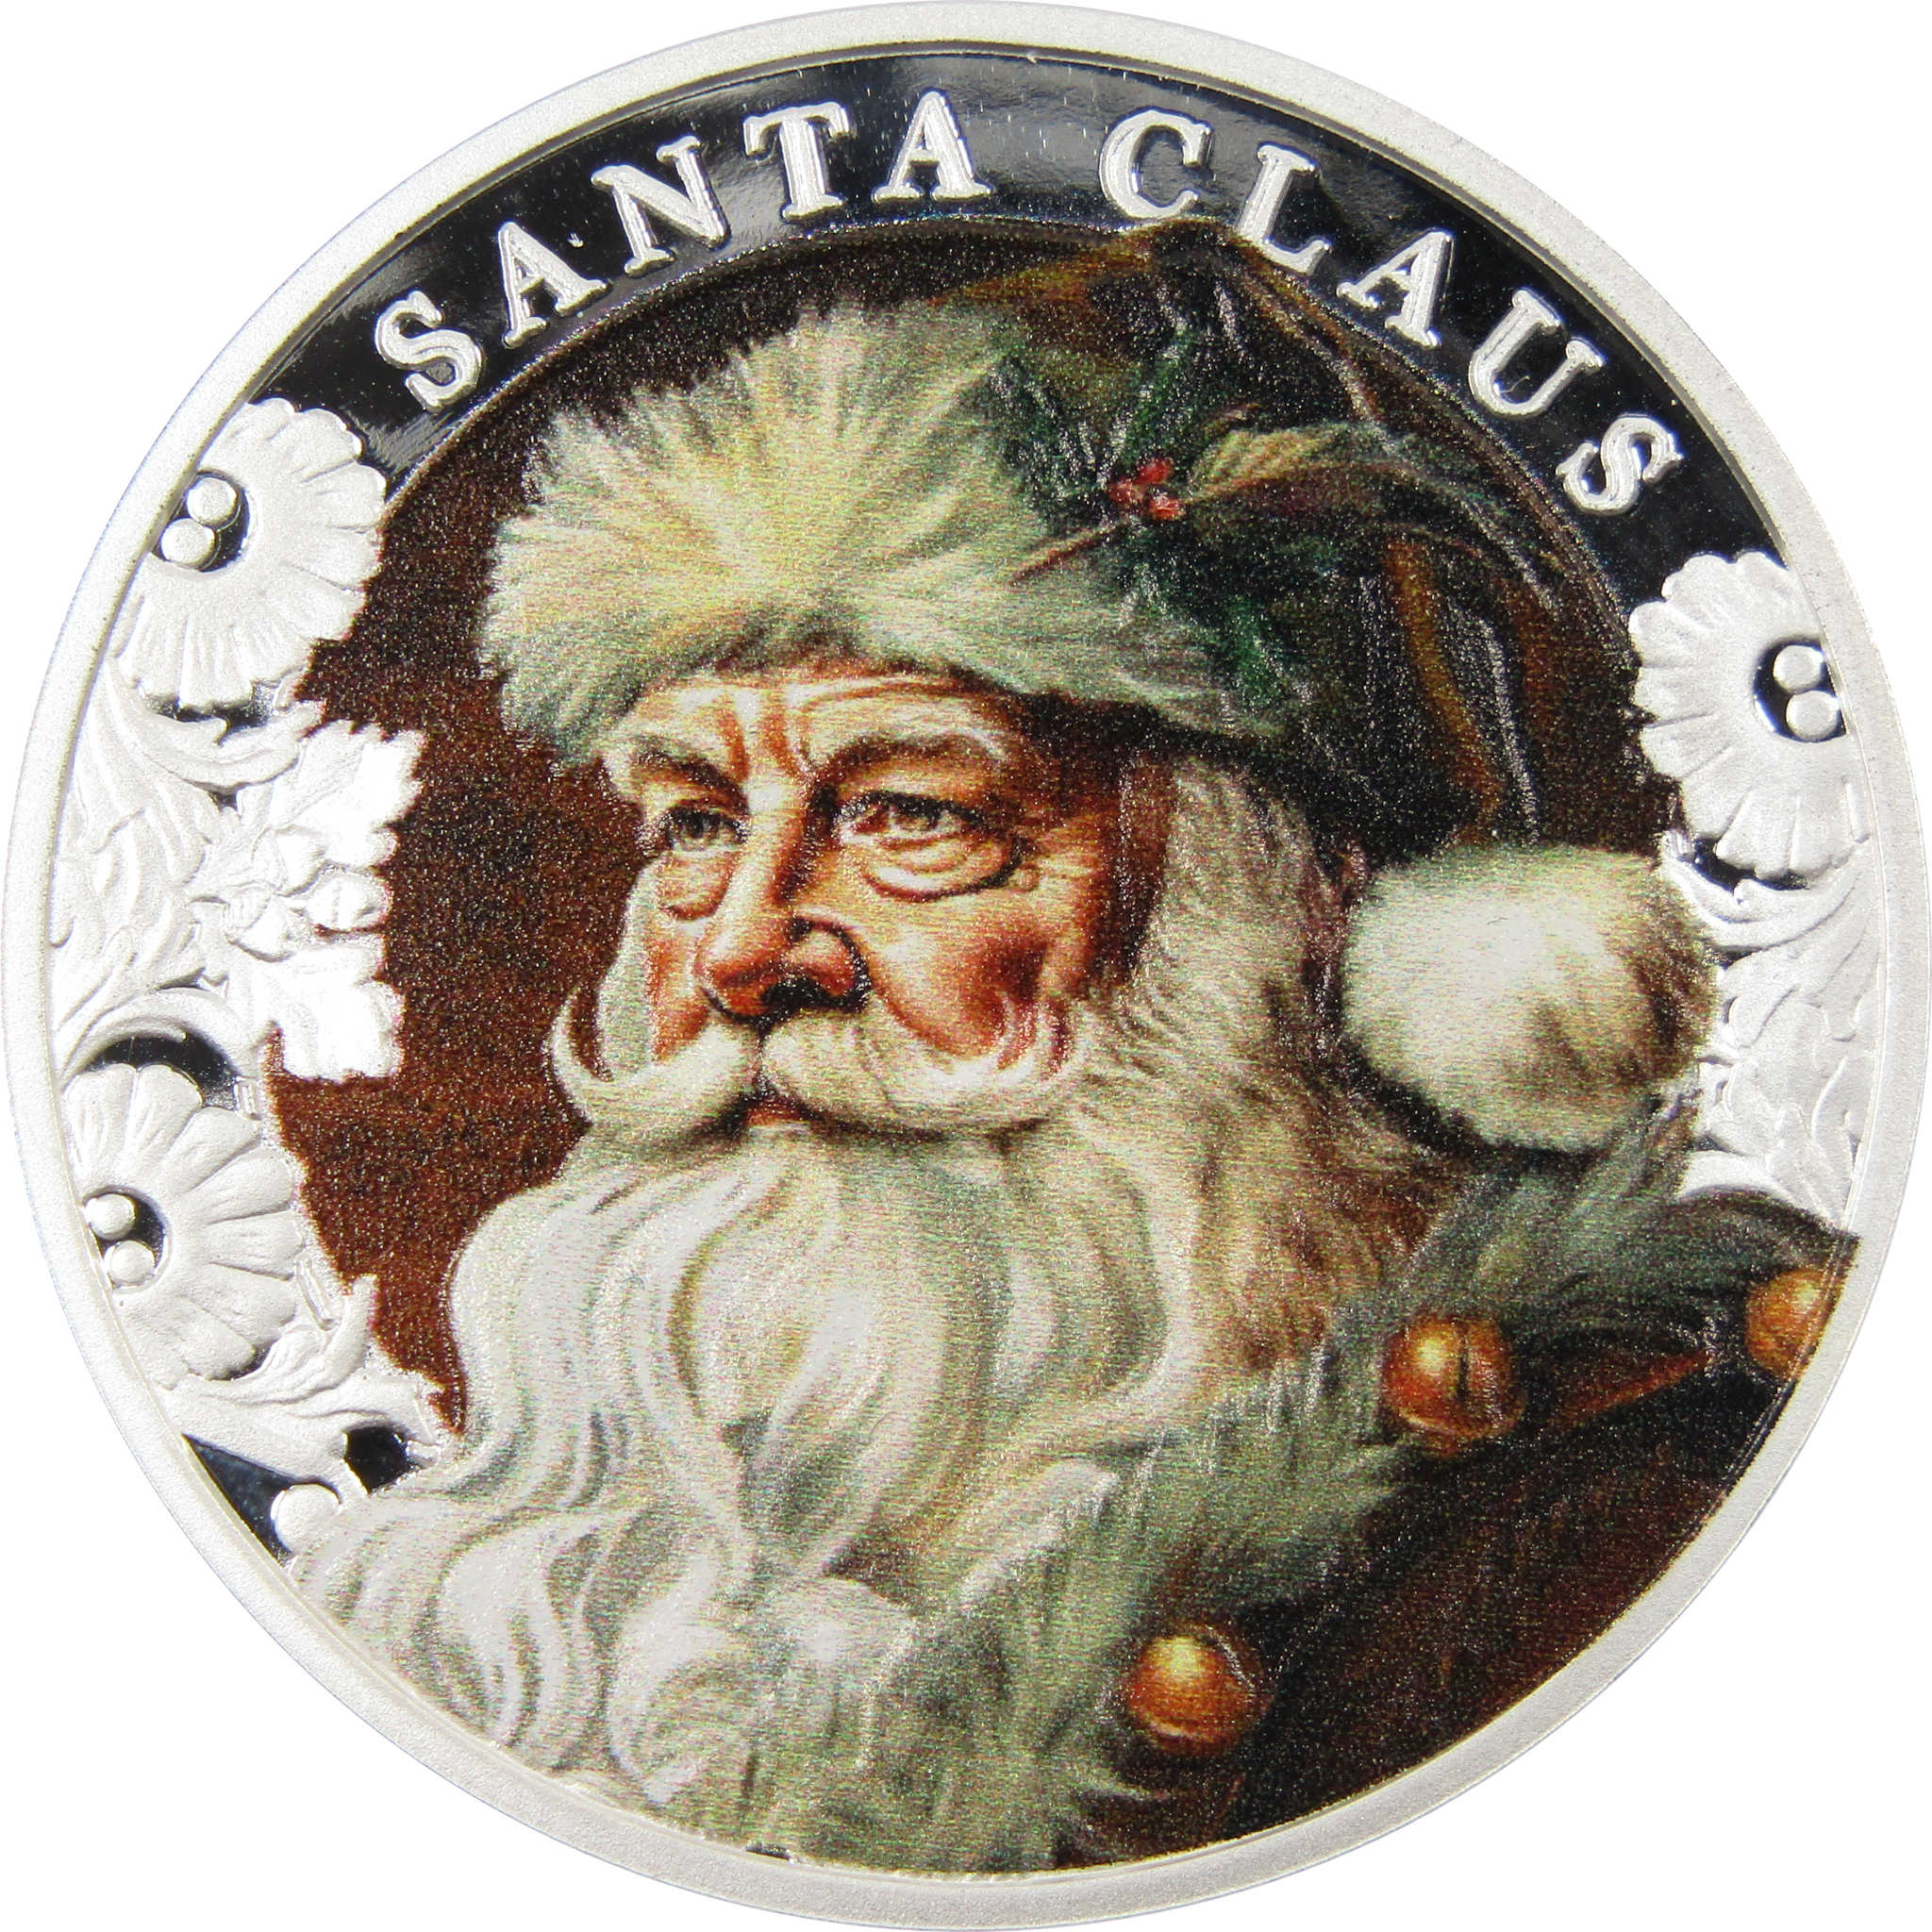 Santa Claus 2000 Franc BU 1 oz .999 Silver Coin 2023 Cameroon COA